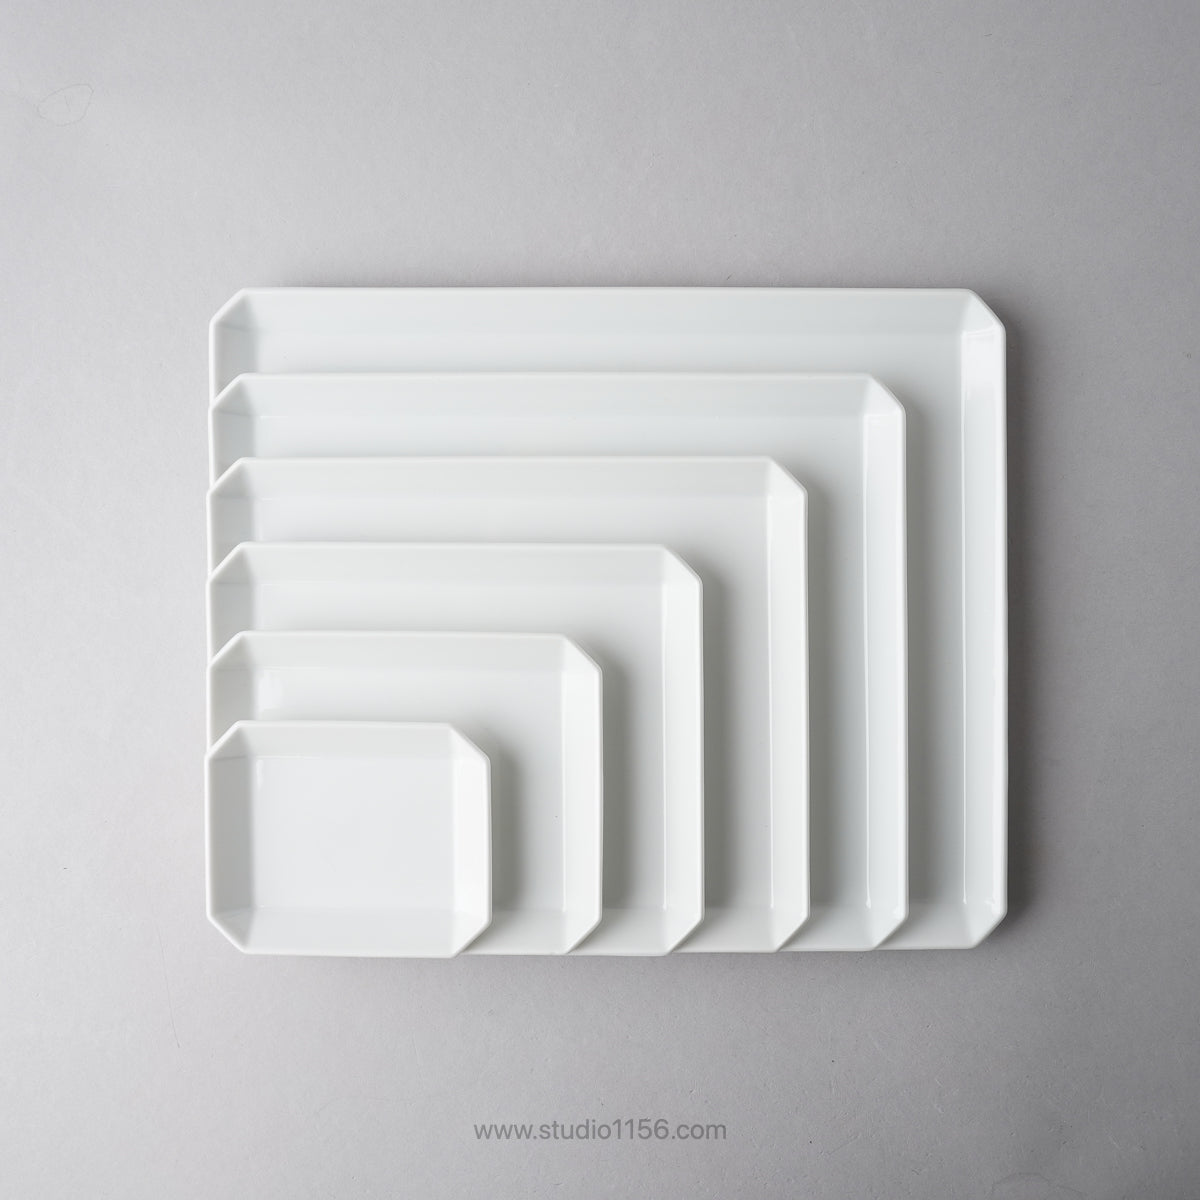 有田焼 スクエアプレート プレーン ホワイト TY Square Plate Plain White 1616 Arita Japan  楕円皿・長角皿｜Studio1156